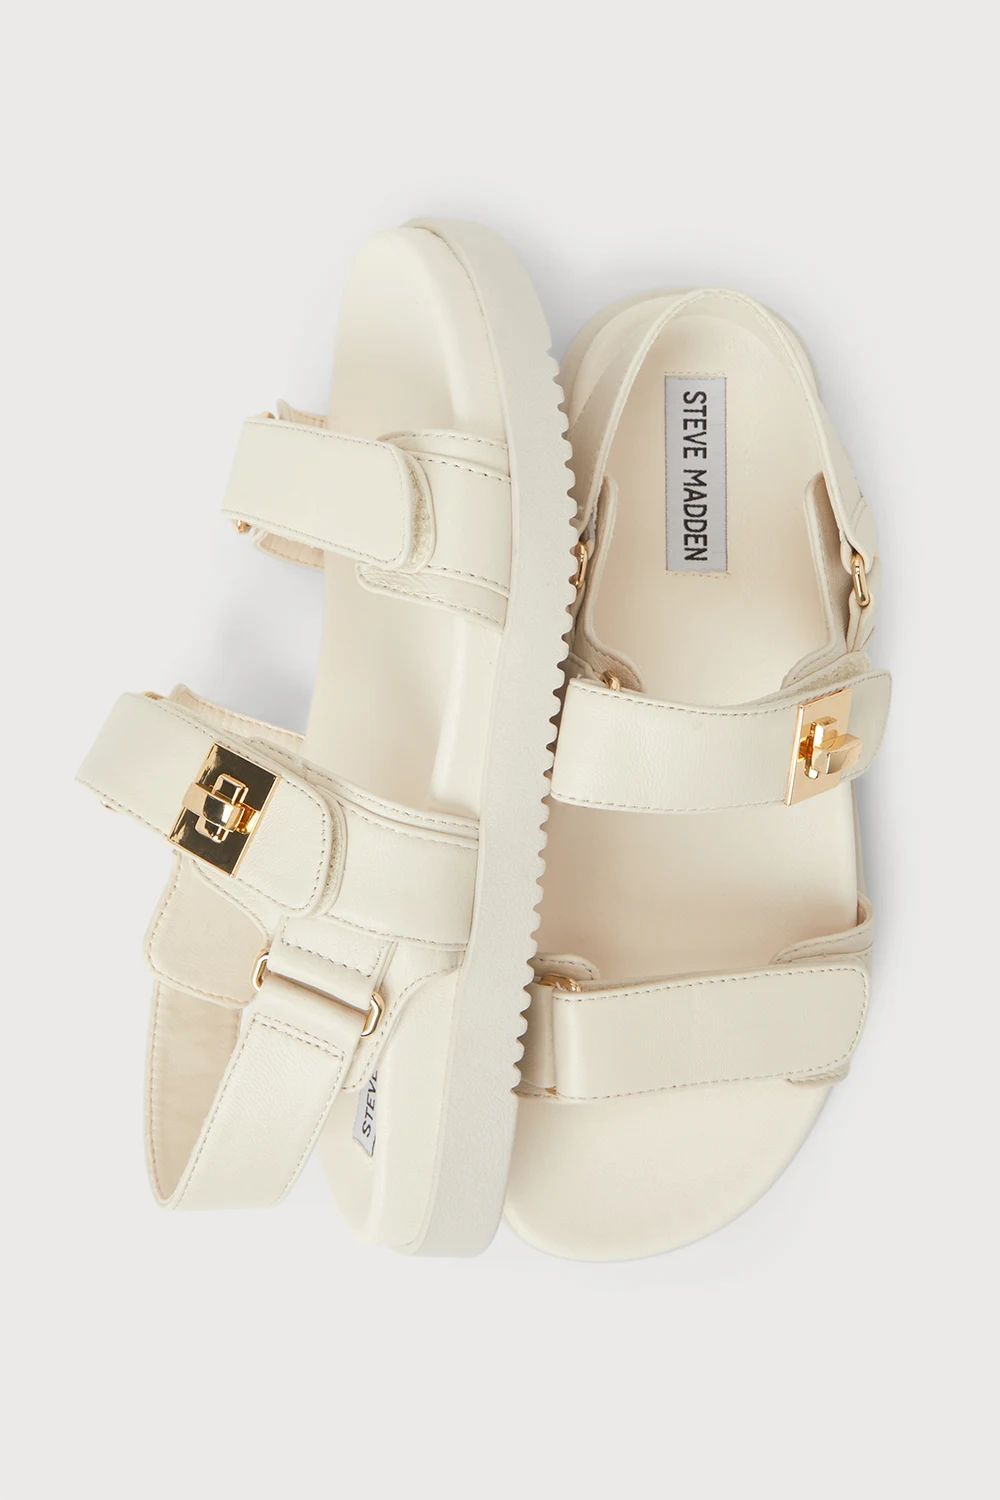 Mona Bone Leather Buckle Sandals | Lulus (US)